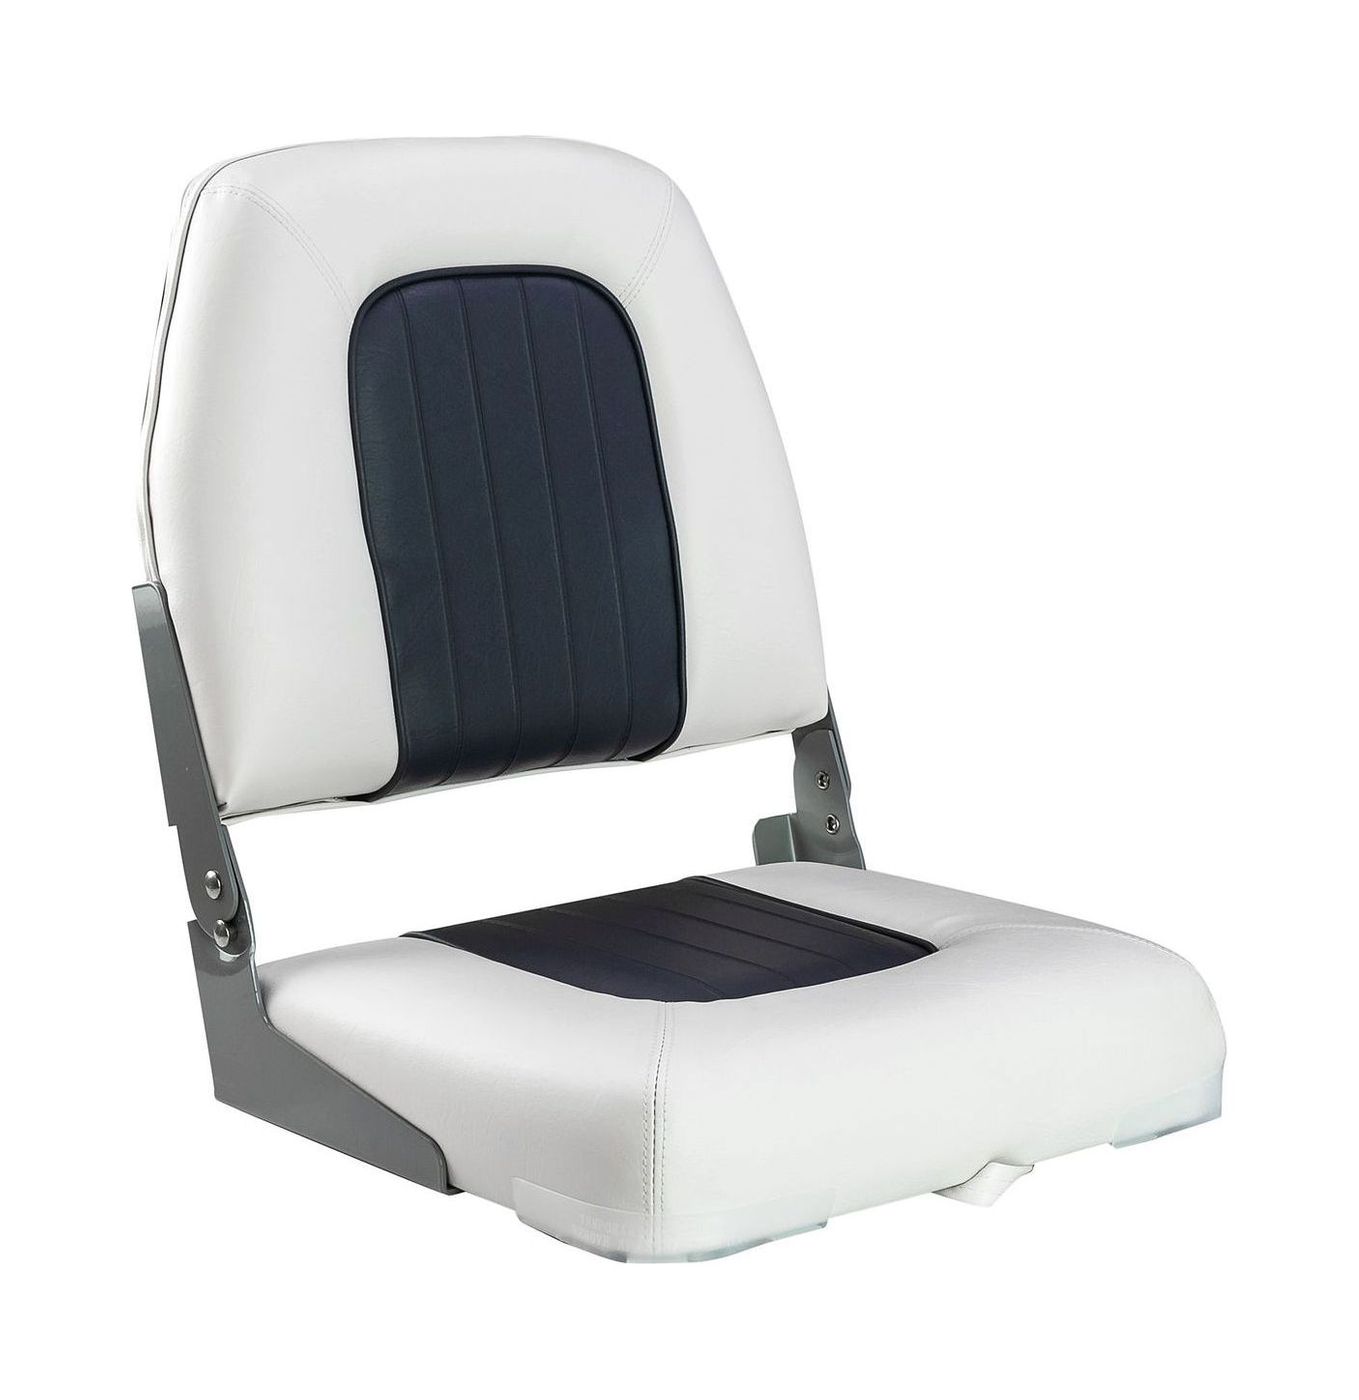 Кресло мягкое складное Deluxe, обивка винил, цвет белый/угольный, Marine Rocket 75137WC-MR